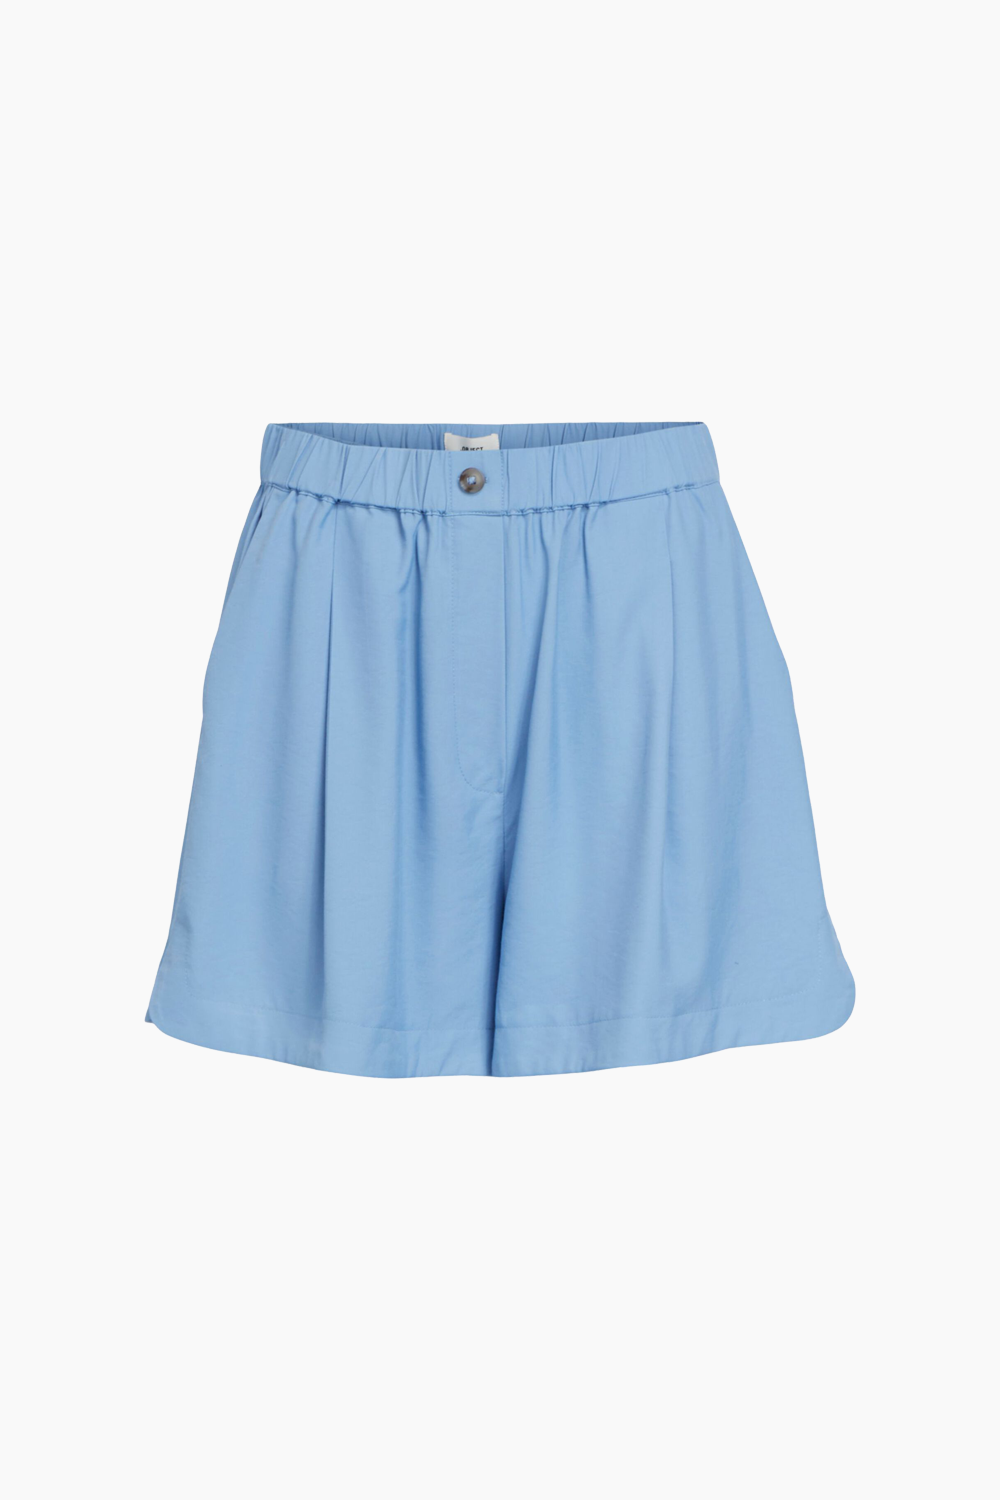 12: Objlagan HW Shorts - Provence - Object - Blå XL